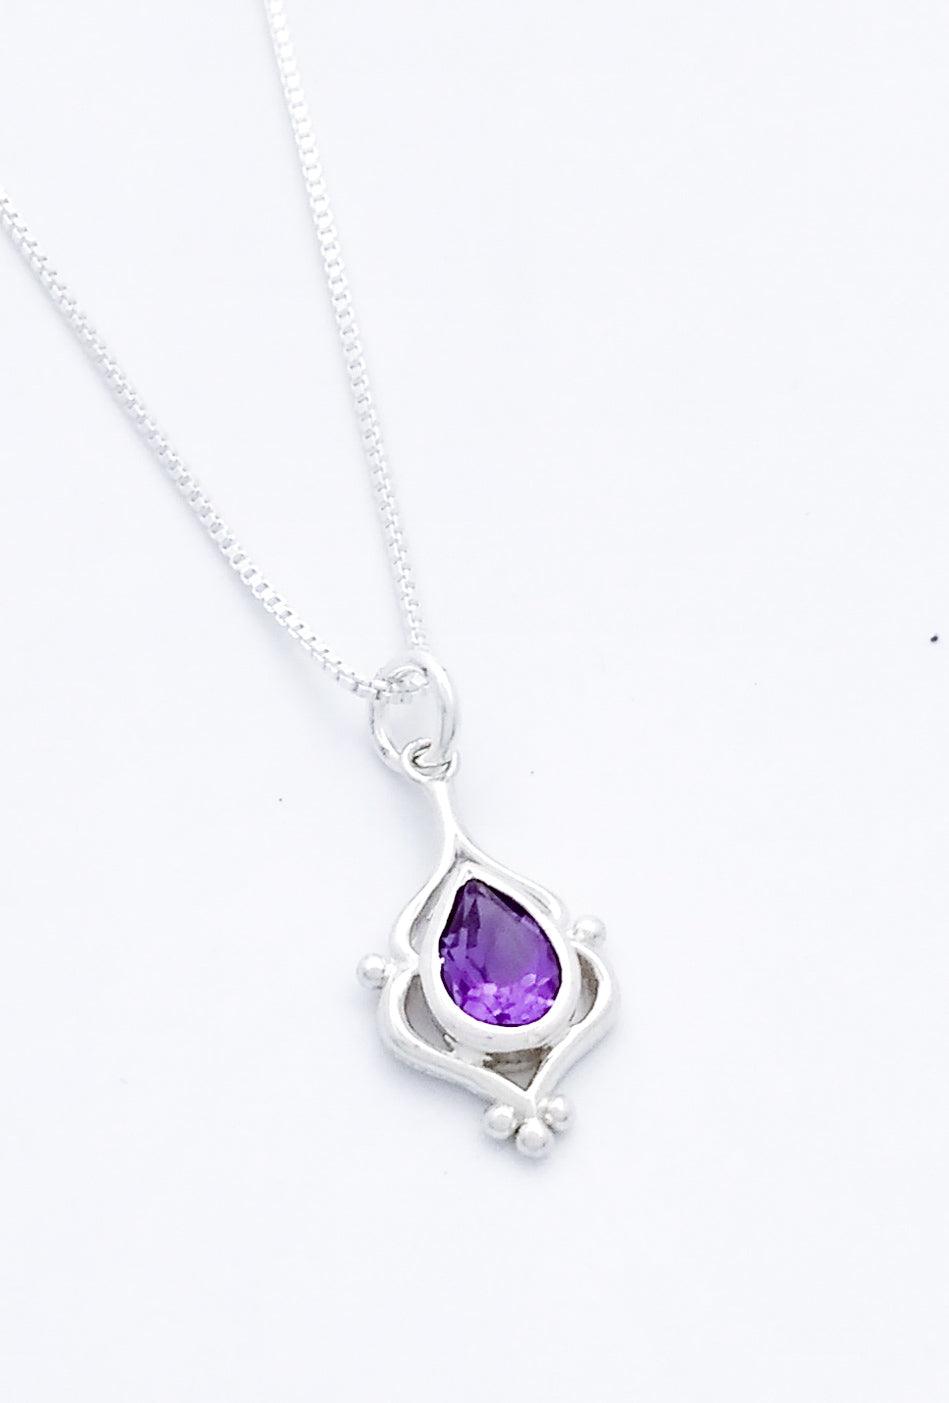 Teardrop shaped amethyst set in an elegant sterling pendant